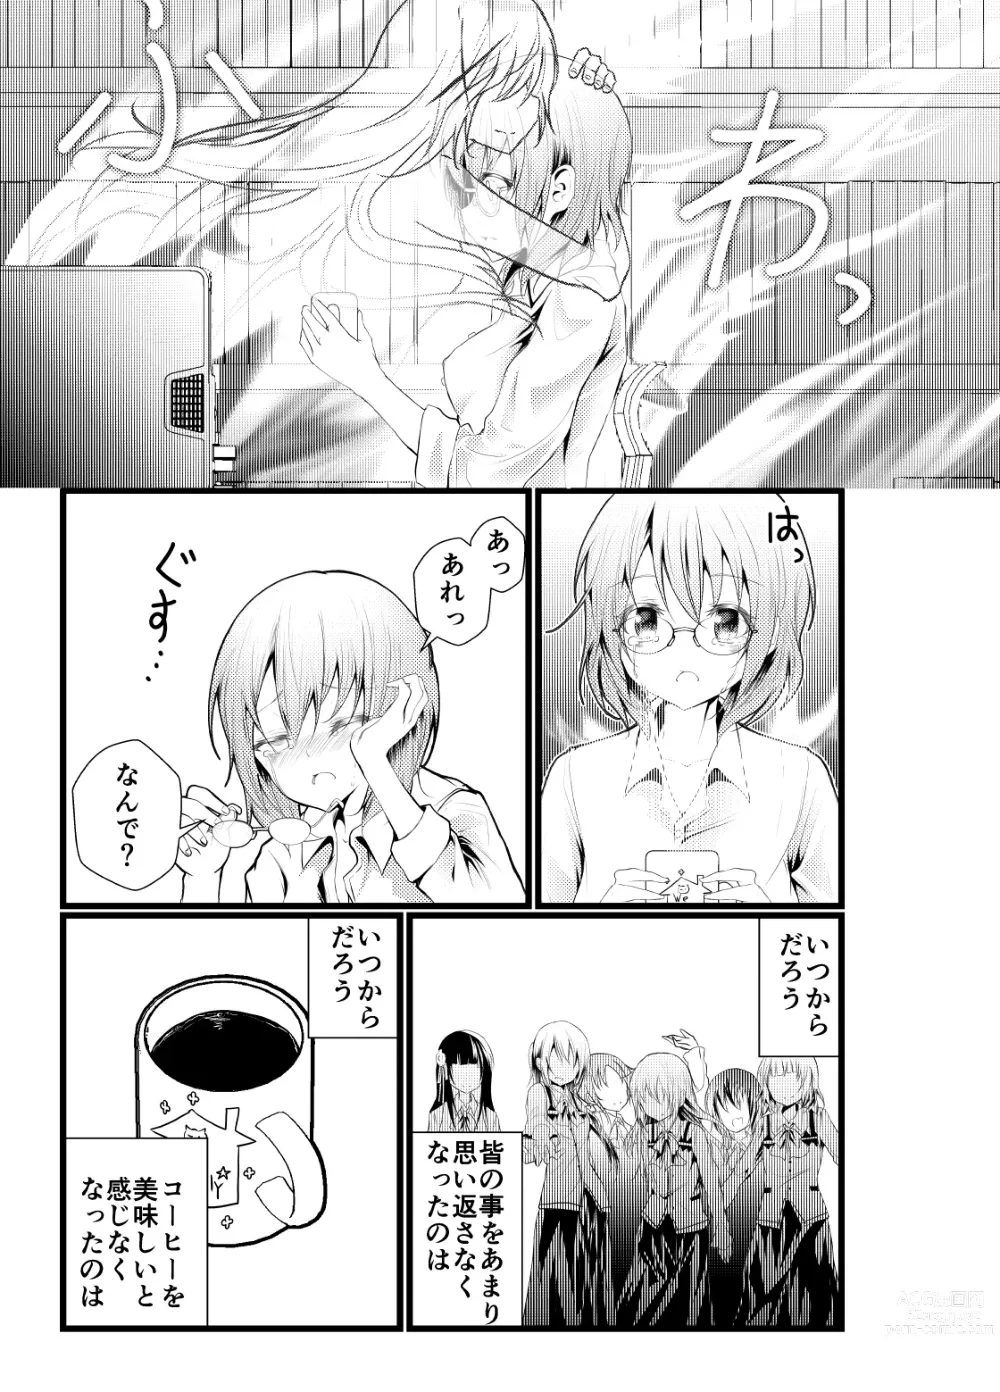 Page 3 of doujinshi Shachiku ni Natta Kokoa-chan ga Kigumi no Machi ni Kaeru Manga